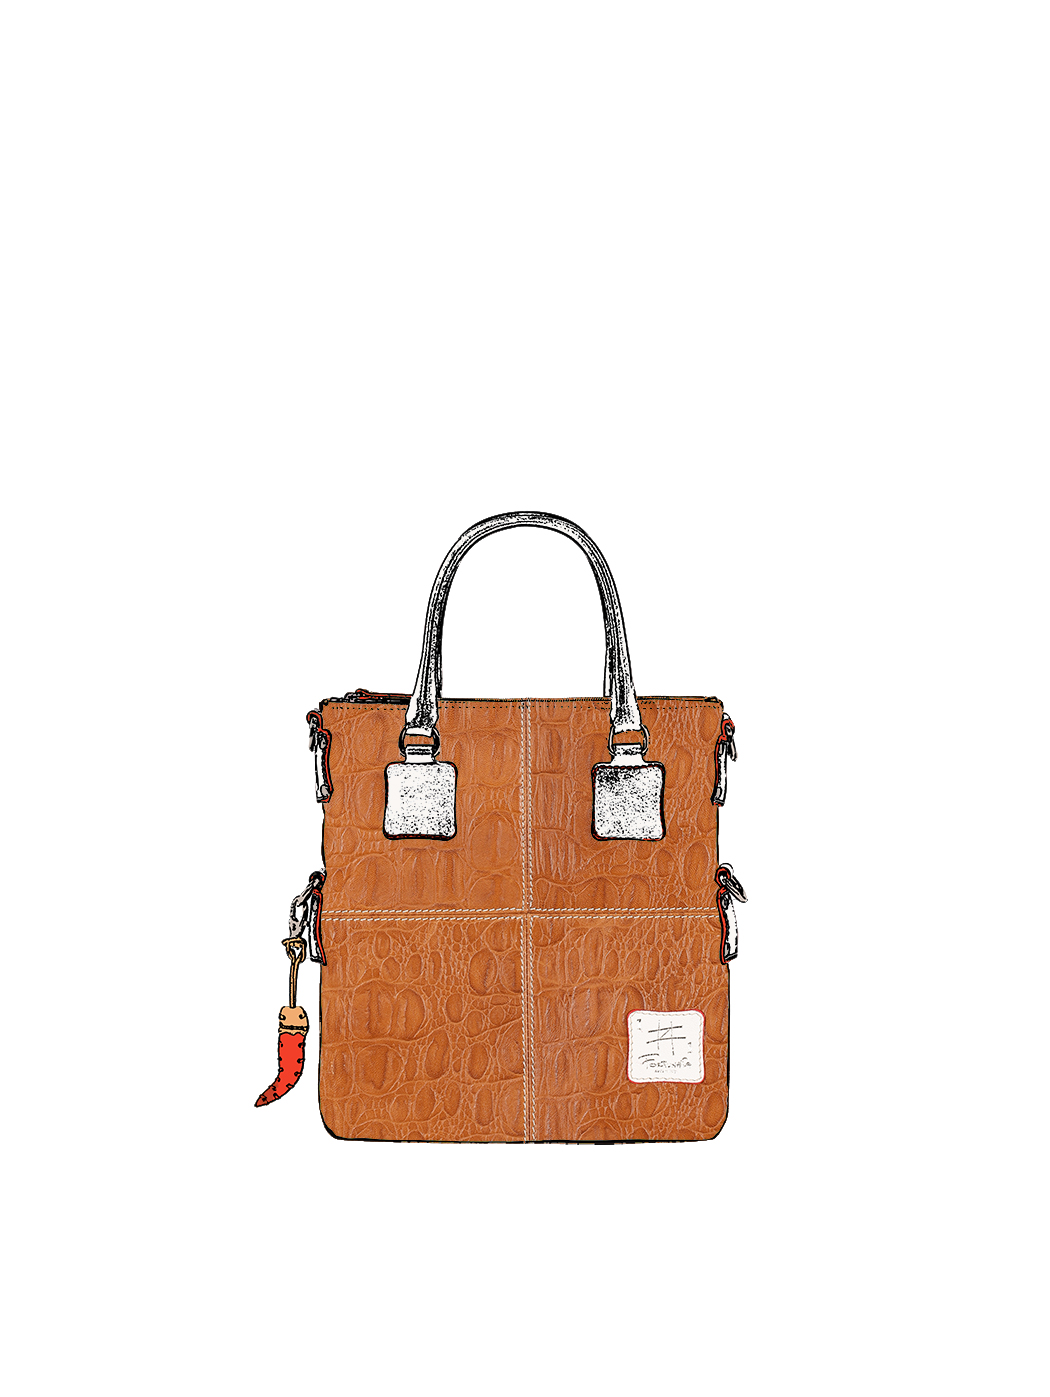 Дизайнерская мини - сумка из коллекции Fortunata коричневого цвета